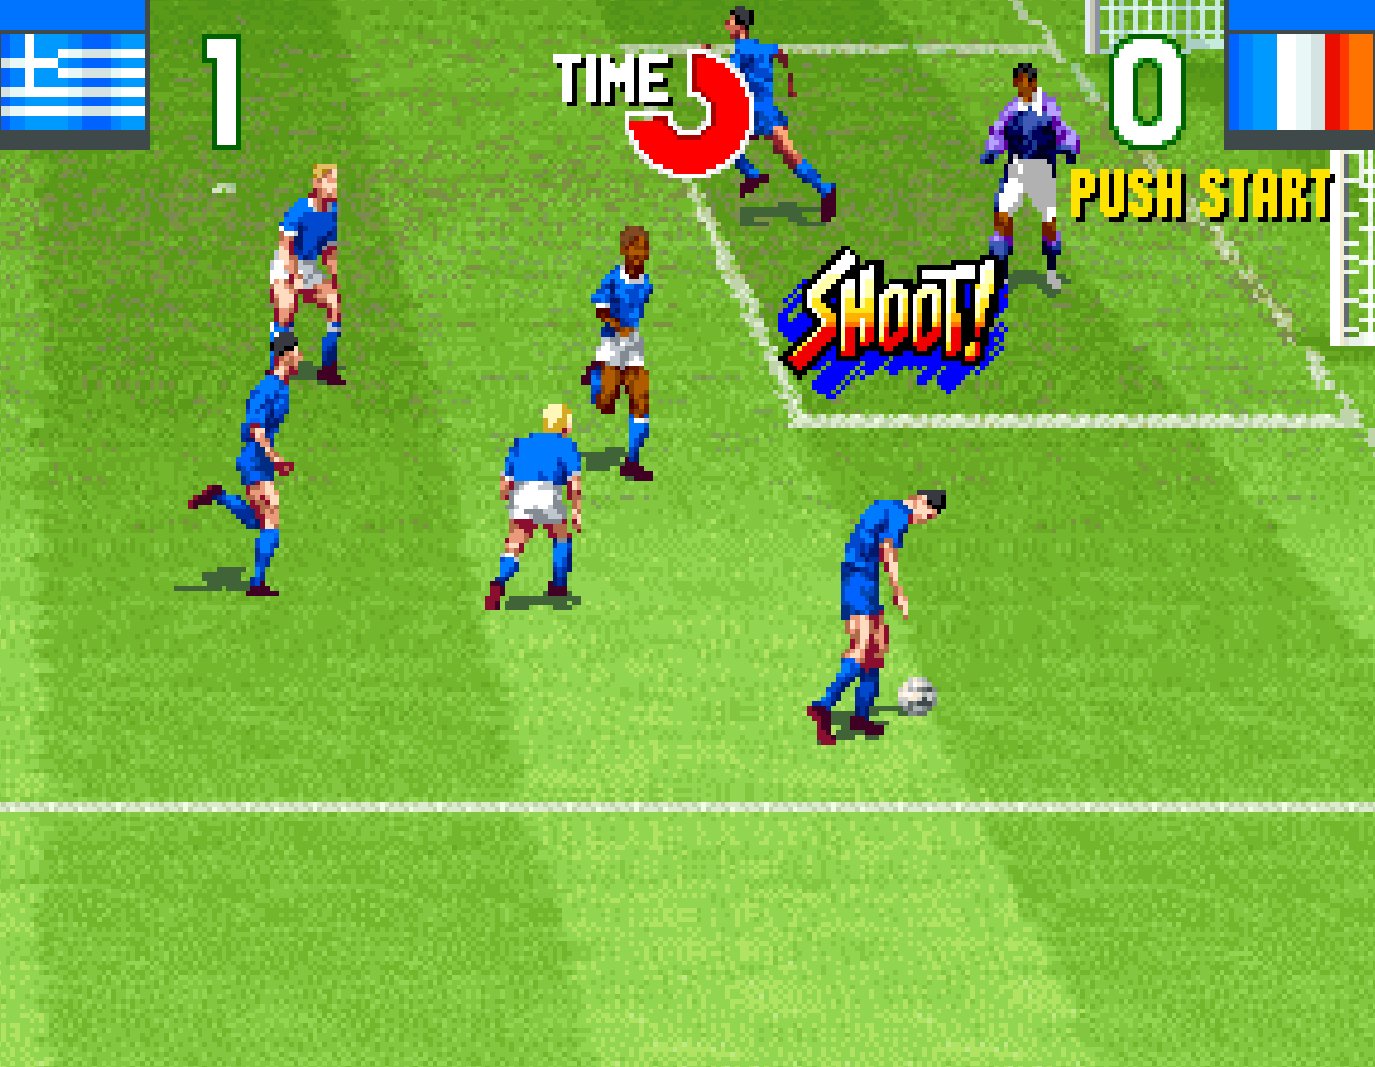 Hamster Corporation Ps4 Xbox One Nintendo Switch アケアカneogeo 得点王2 の配信がスタート 本作は1994年にsnkから発売されたサッカーゲームです スリリングでエキサイティングなサッカーゲームを ぜひお楽しみください T Co Fj6llz9cwb